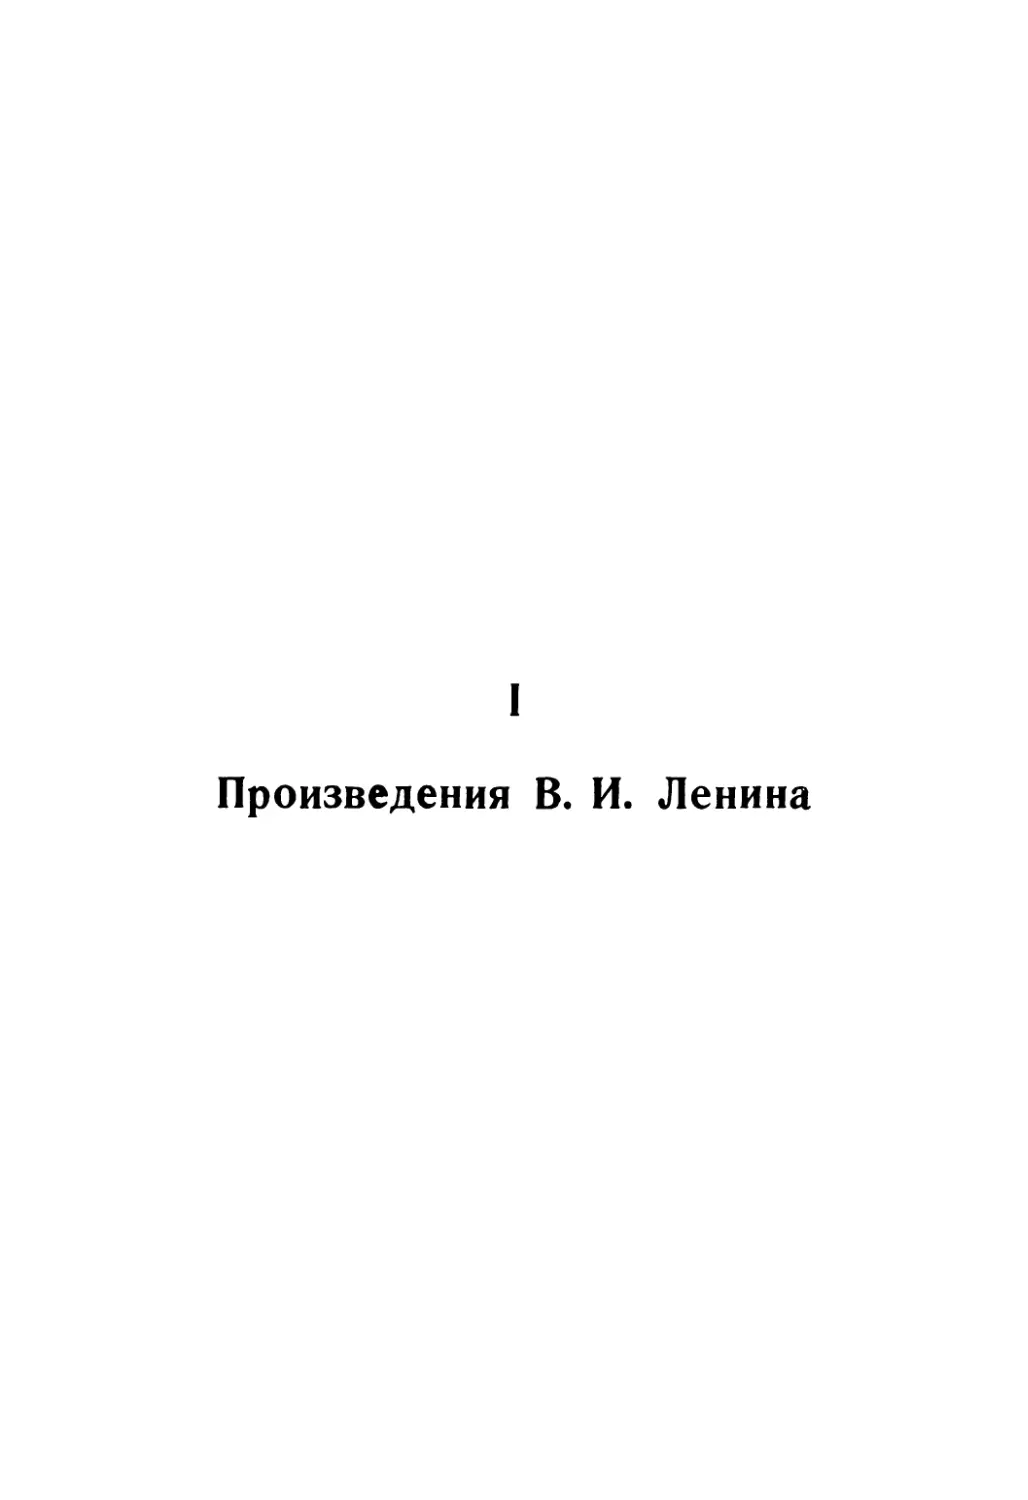 I. ПРОИЗВЕДЕНИЯ В. И. ЛЕНИНА